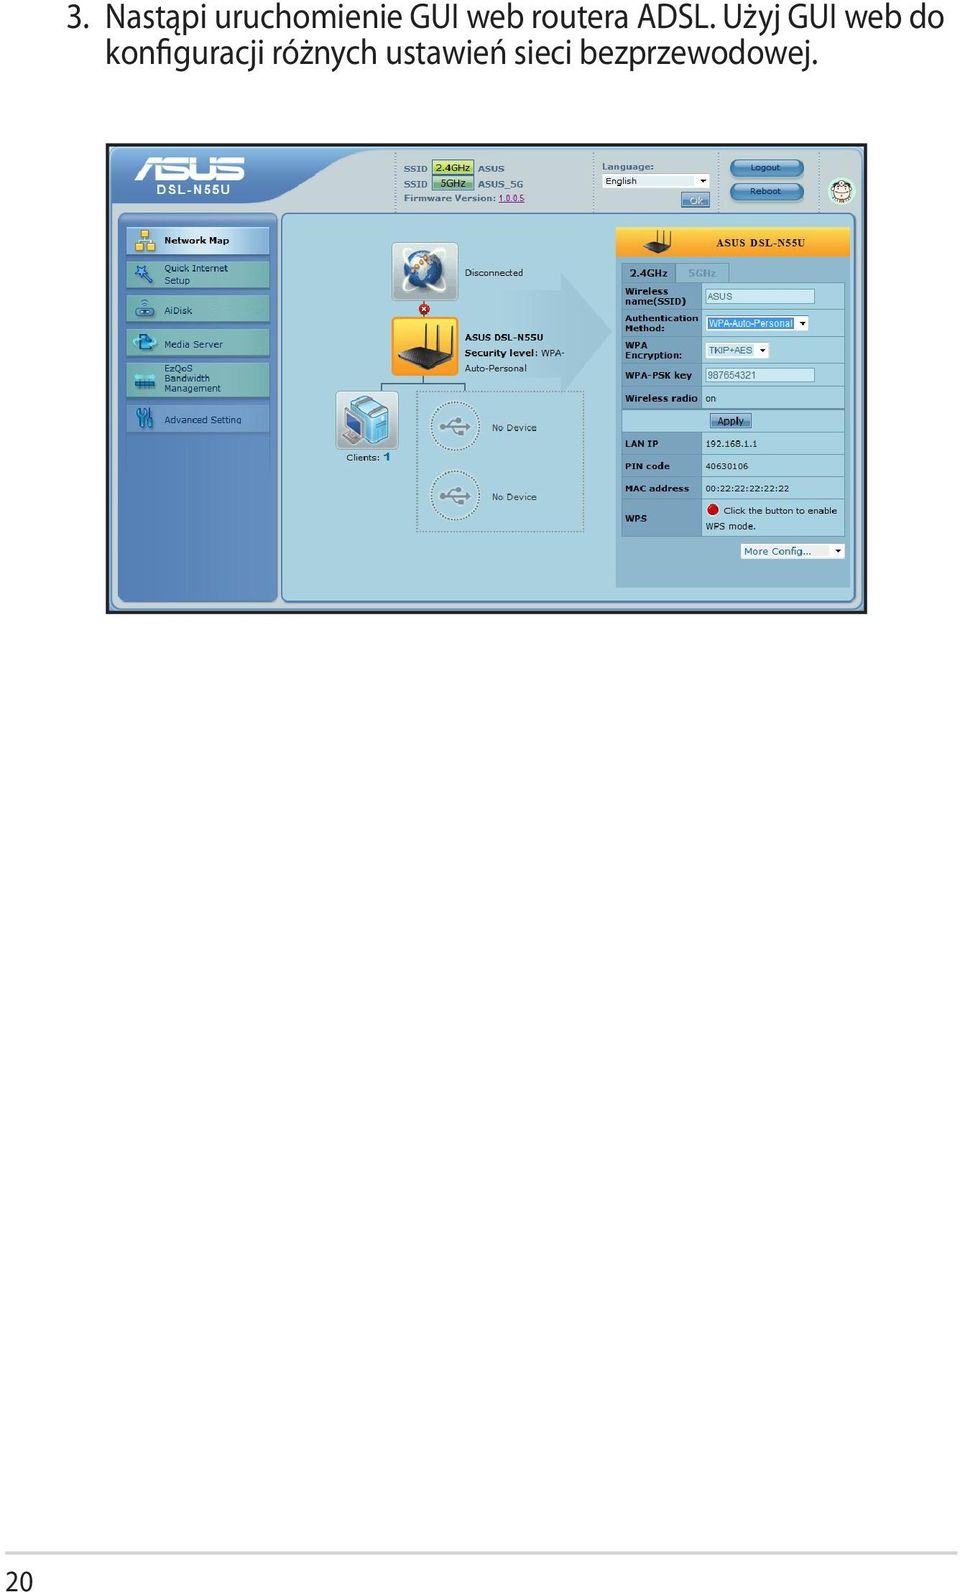 Użyj GUI web do konfiguracji